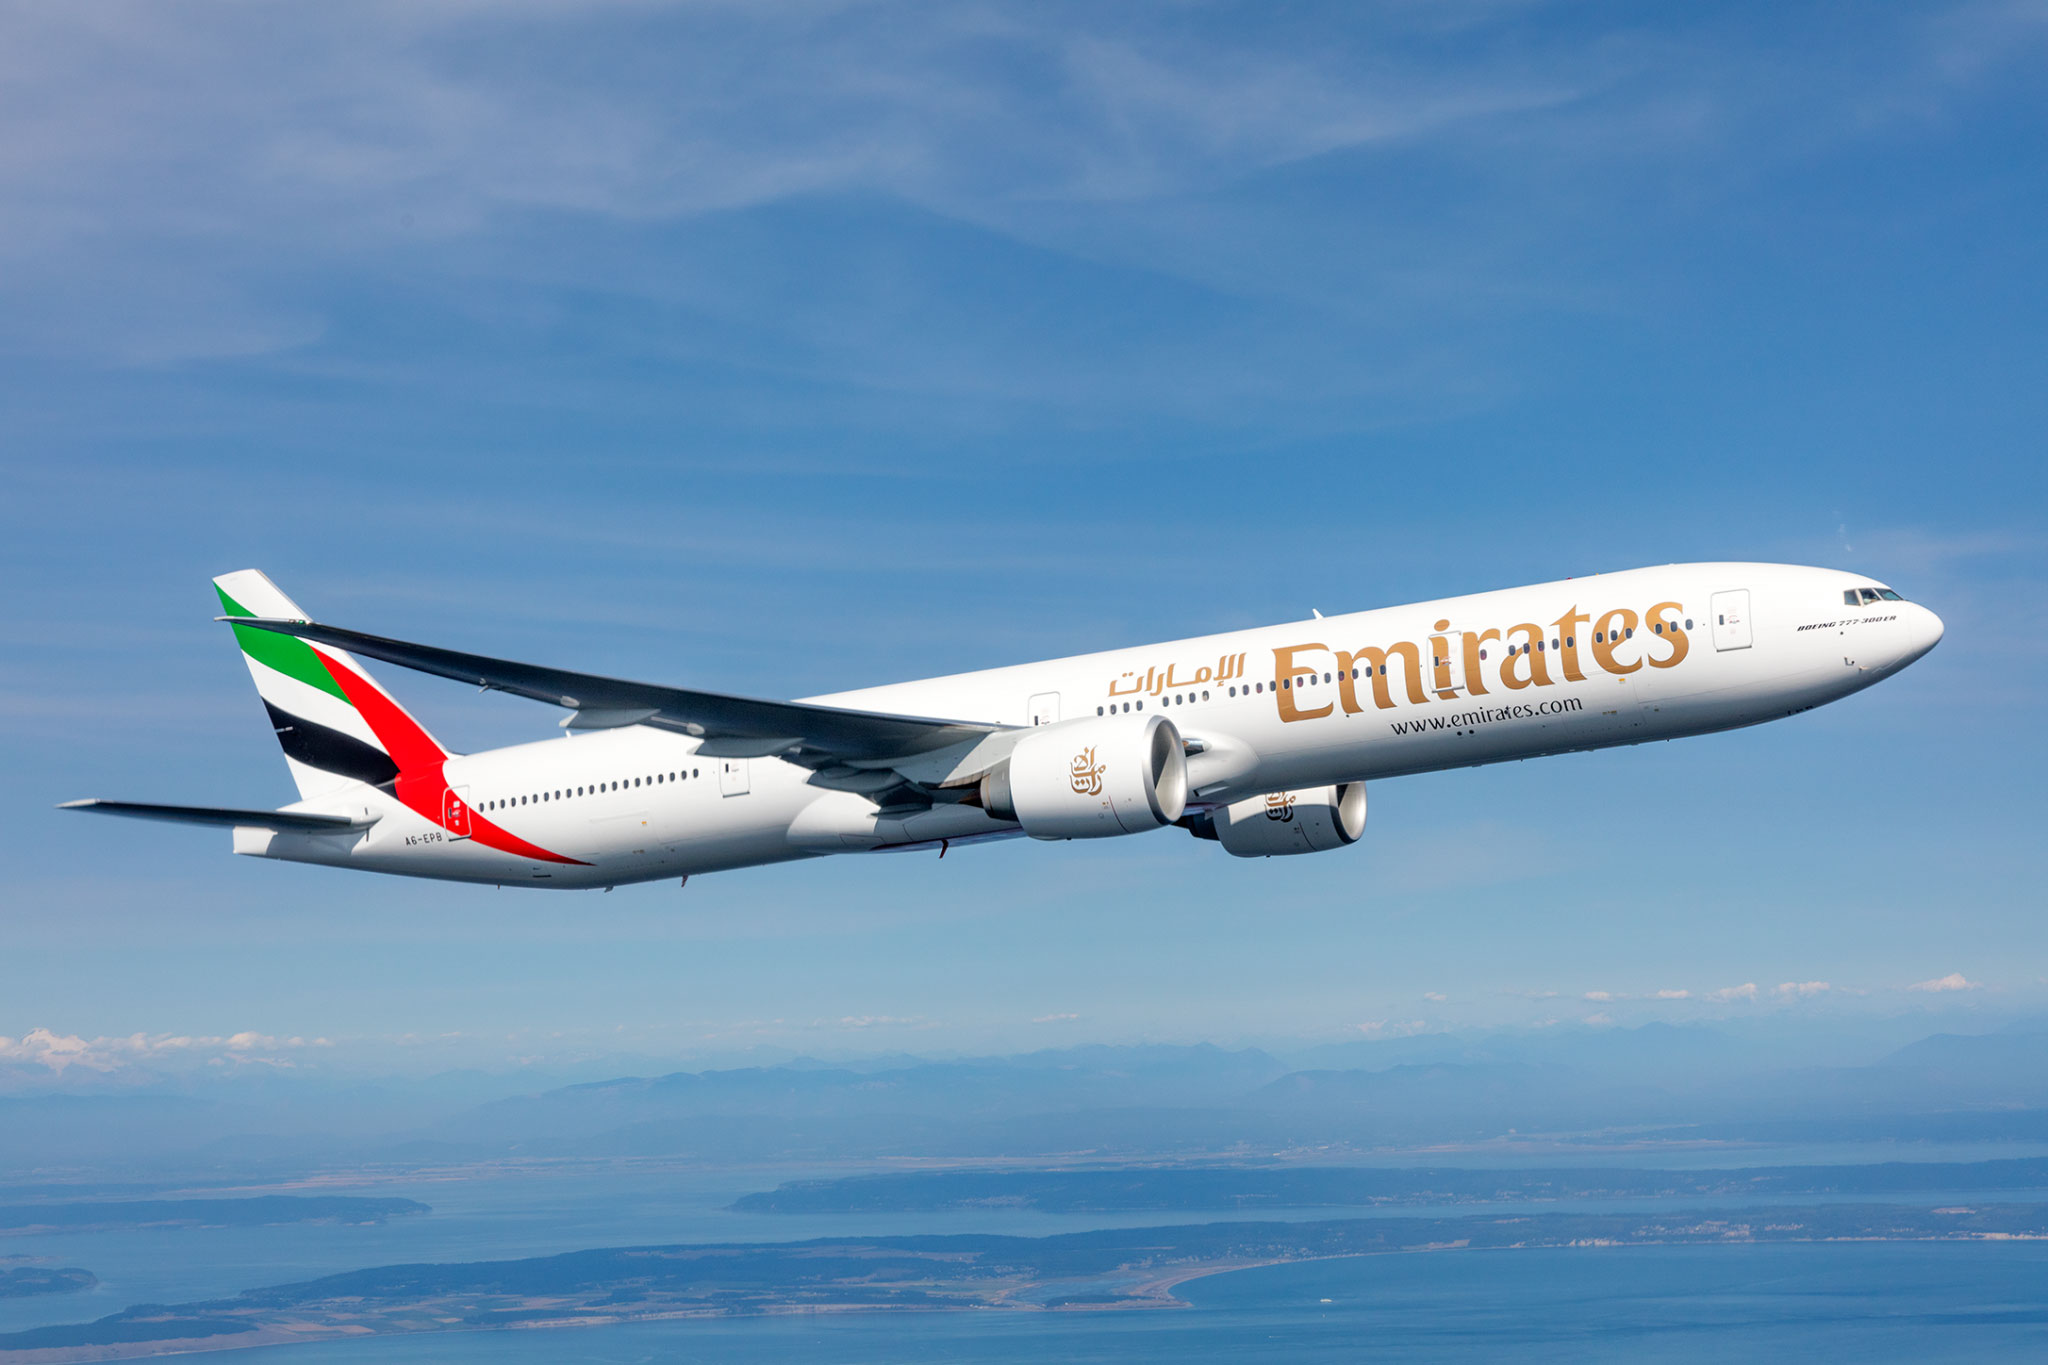 Emirates aircraft. Photo: Emirates